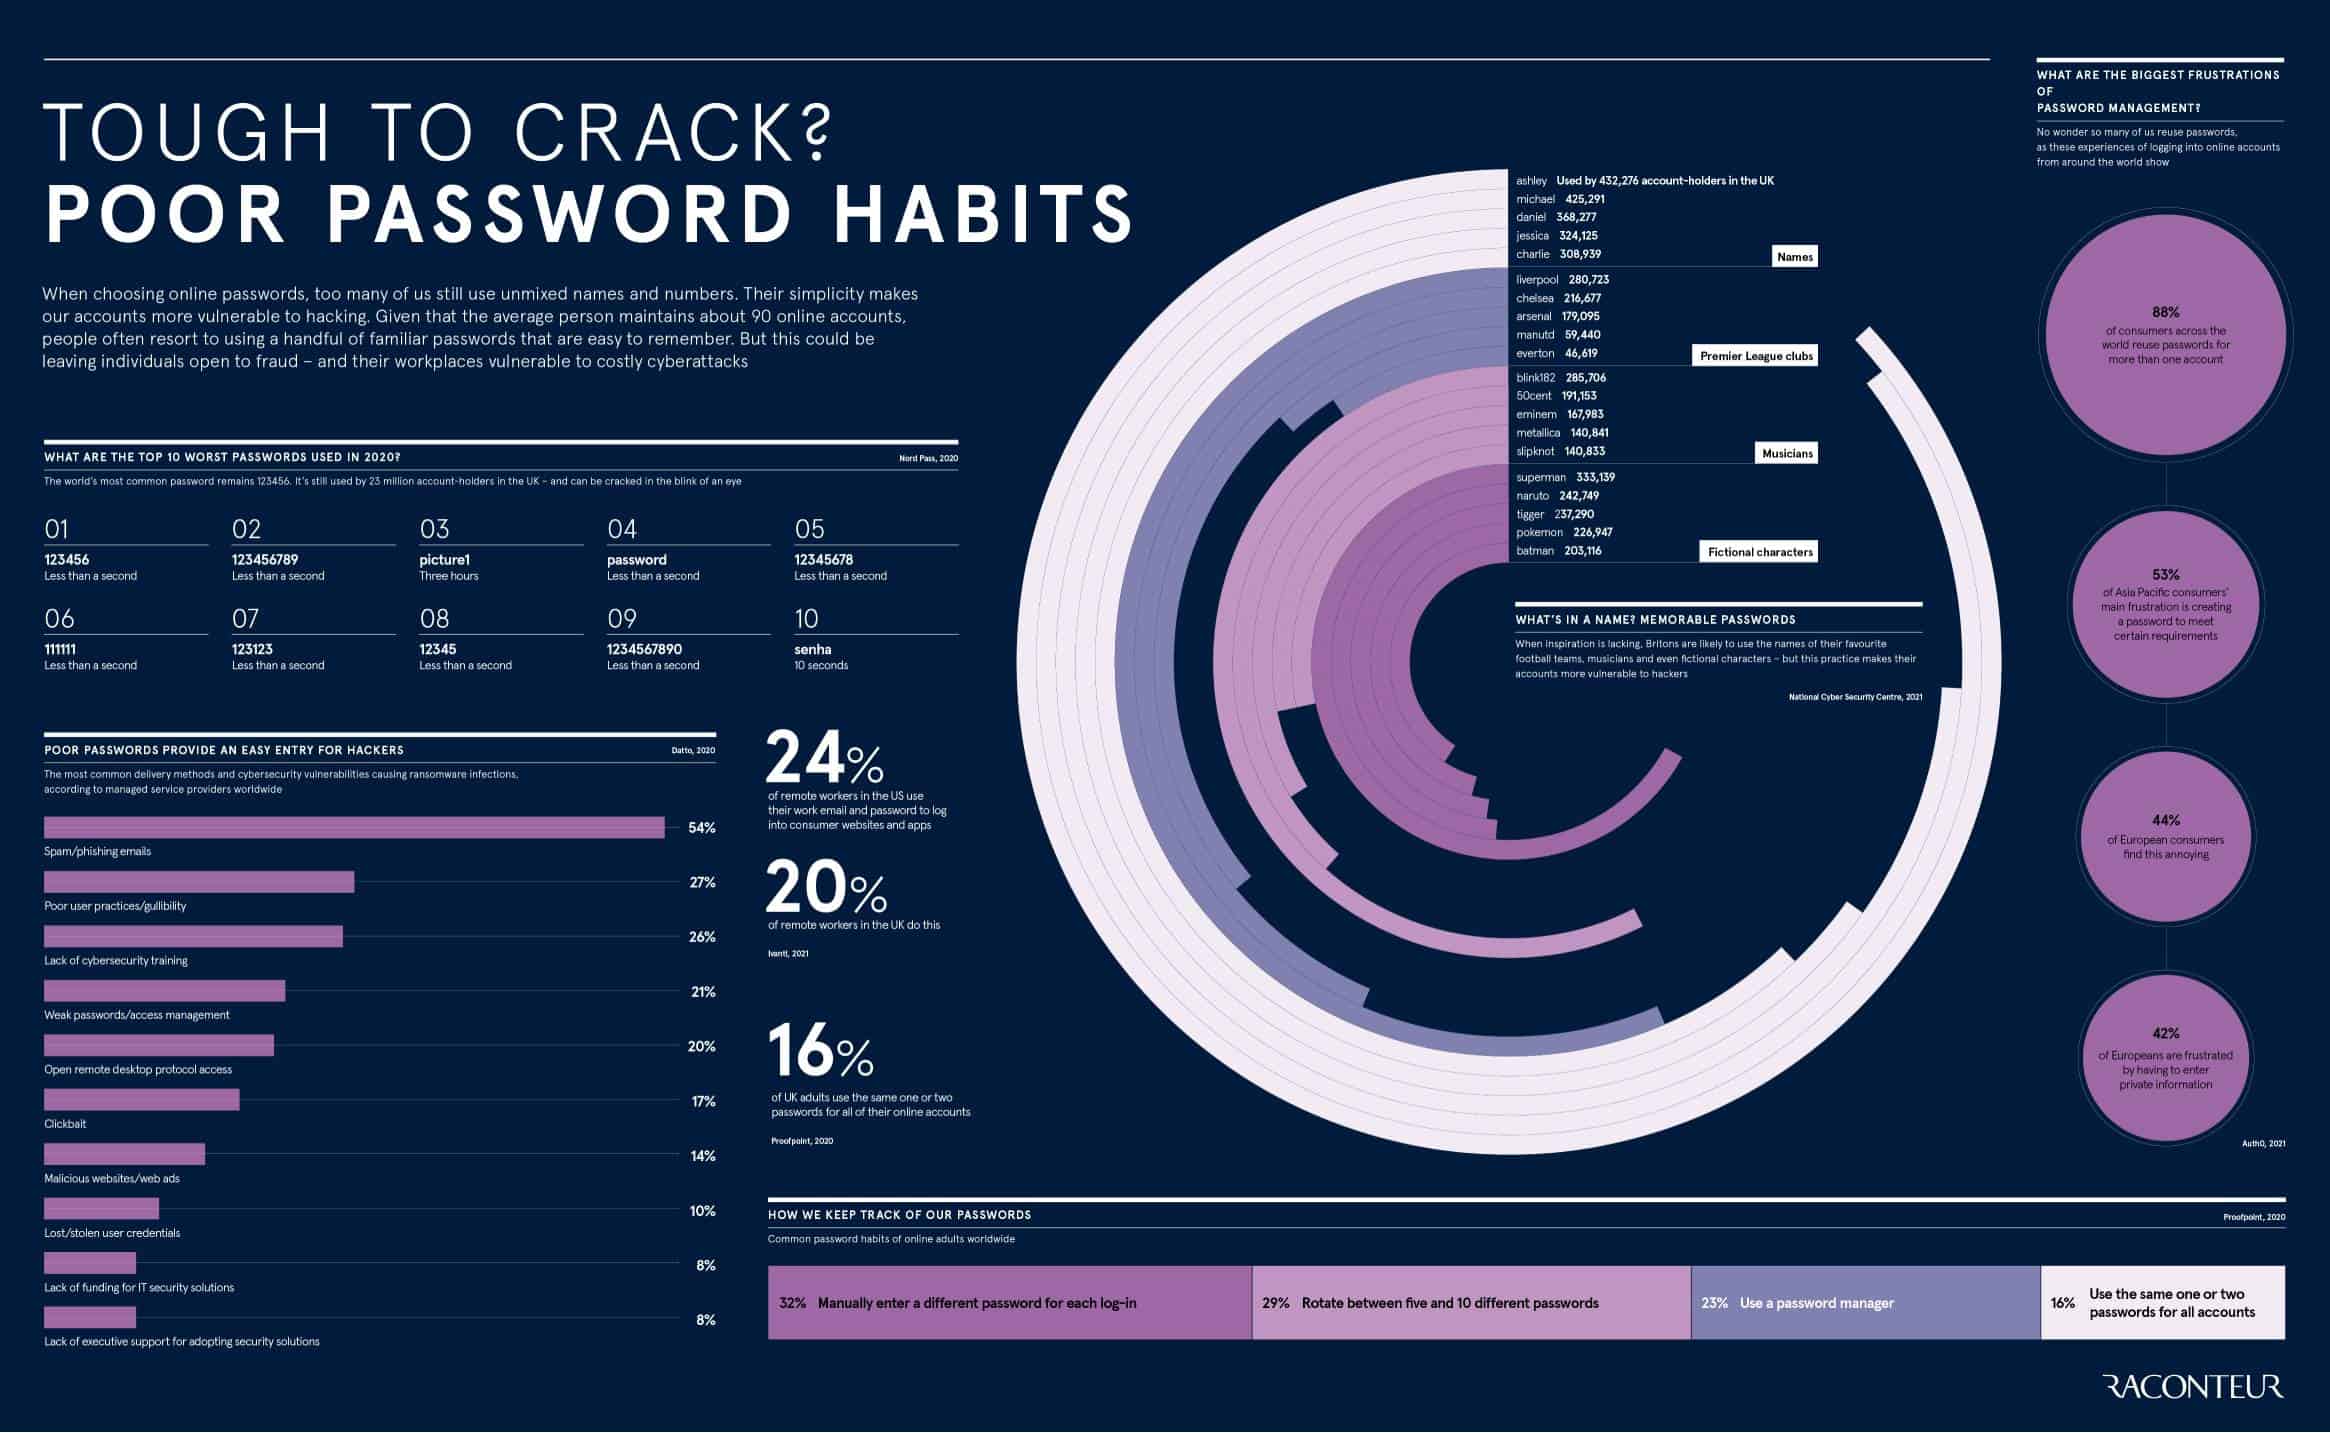 lists poor password habits